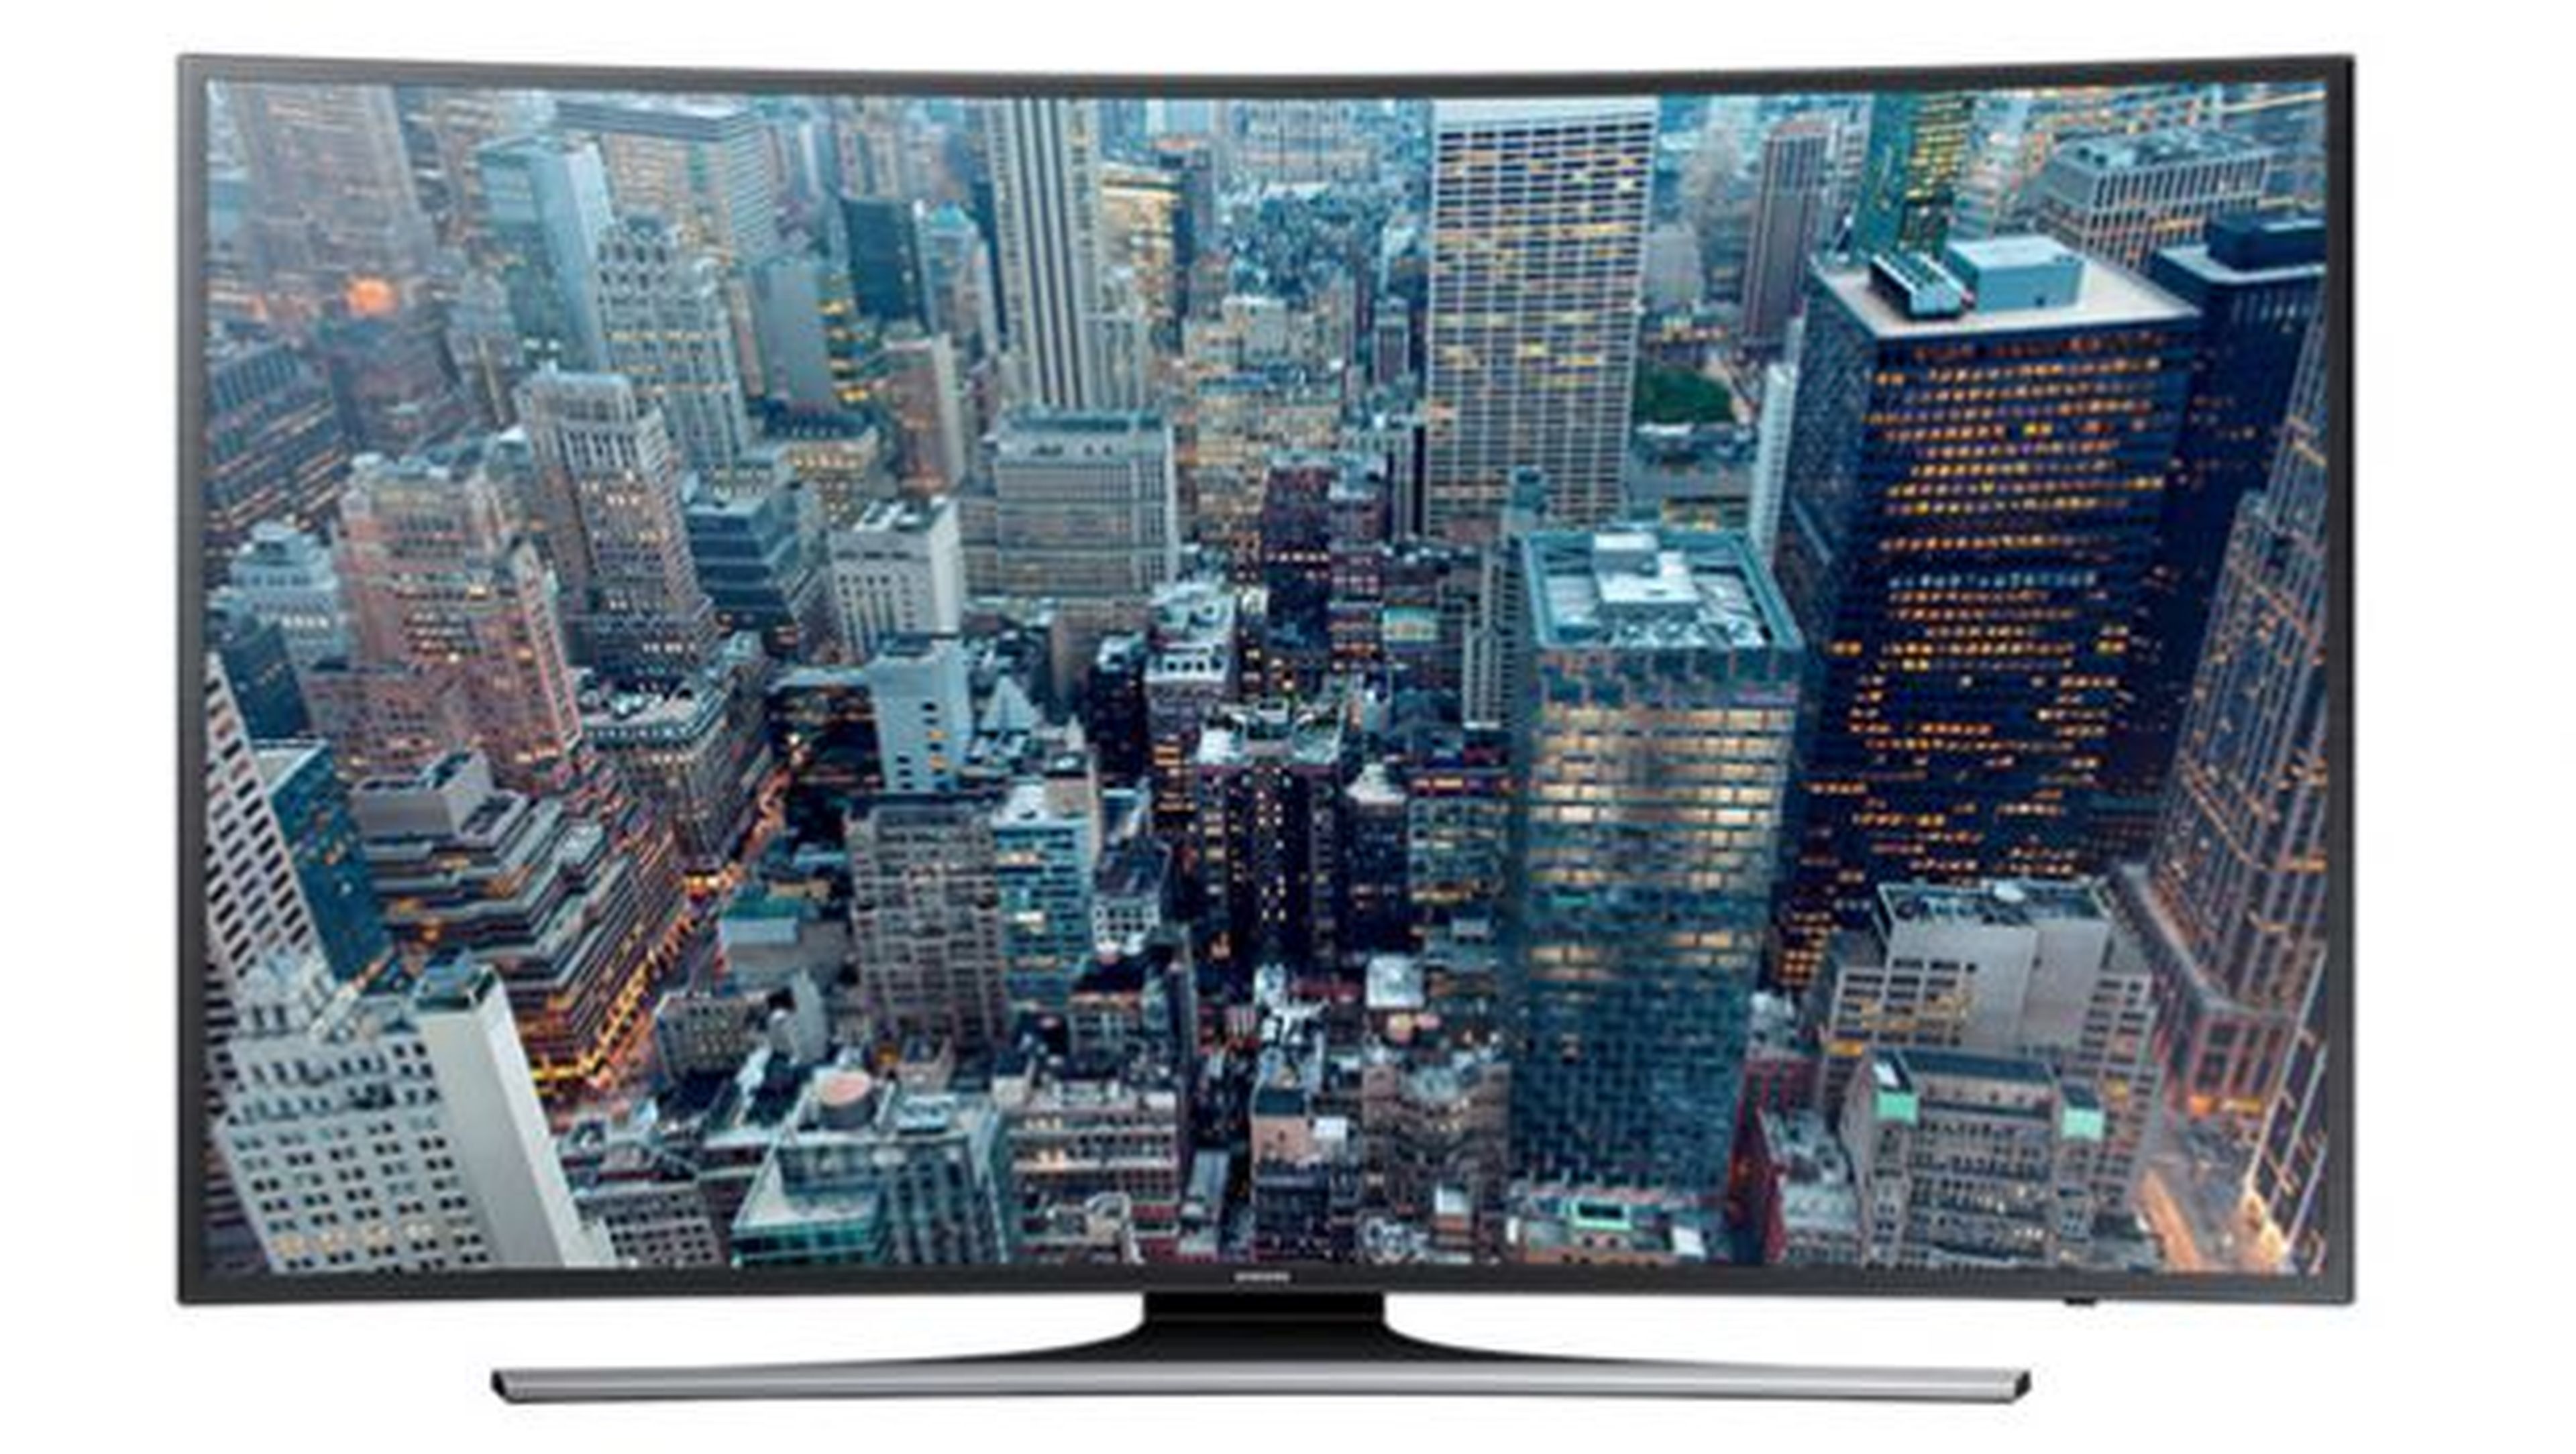 Samsung está ofreciendo productos con una excelente relación calidad precio en televisiones con pantalla curvada y resolución 4K